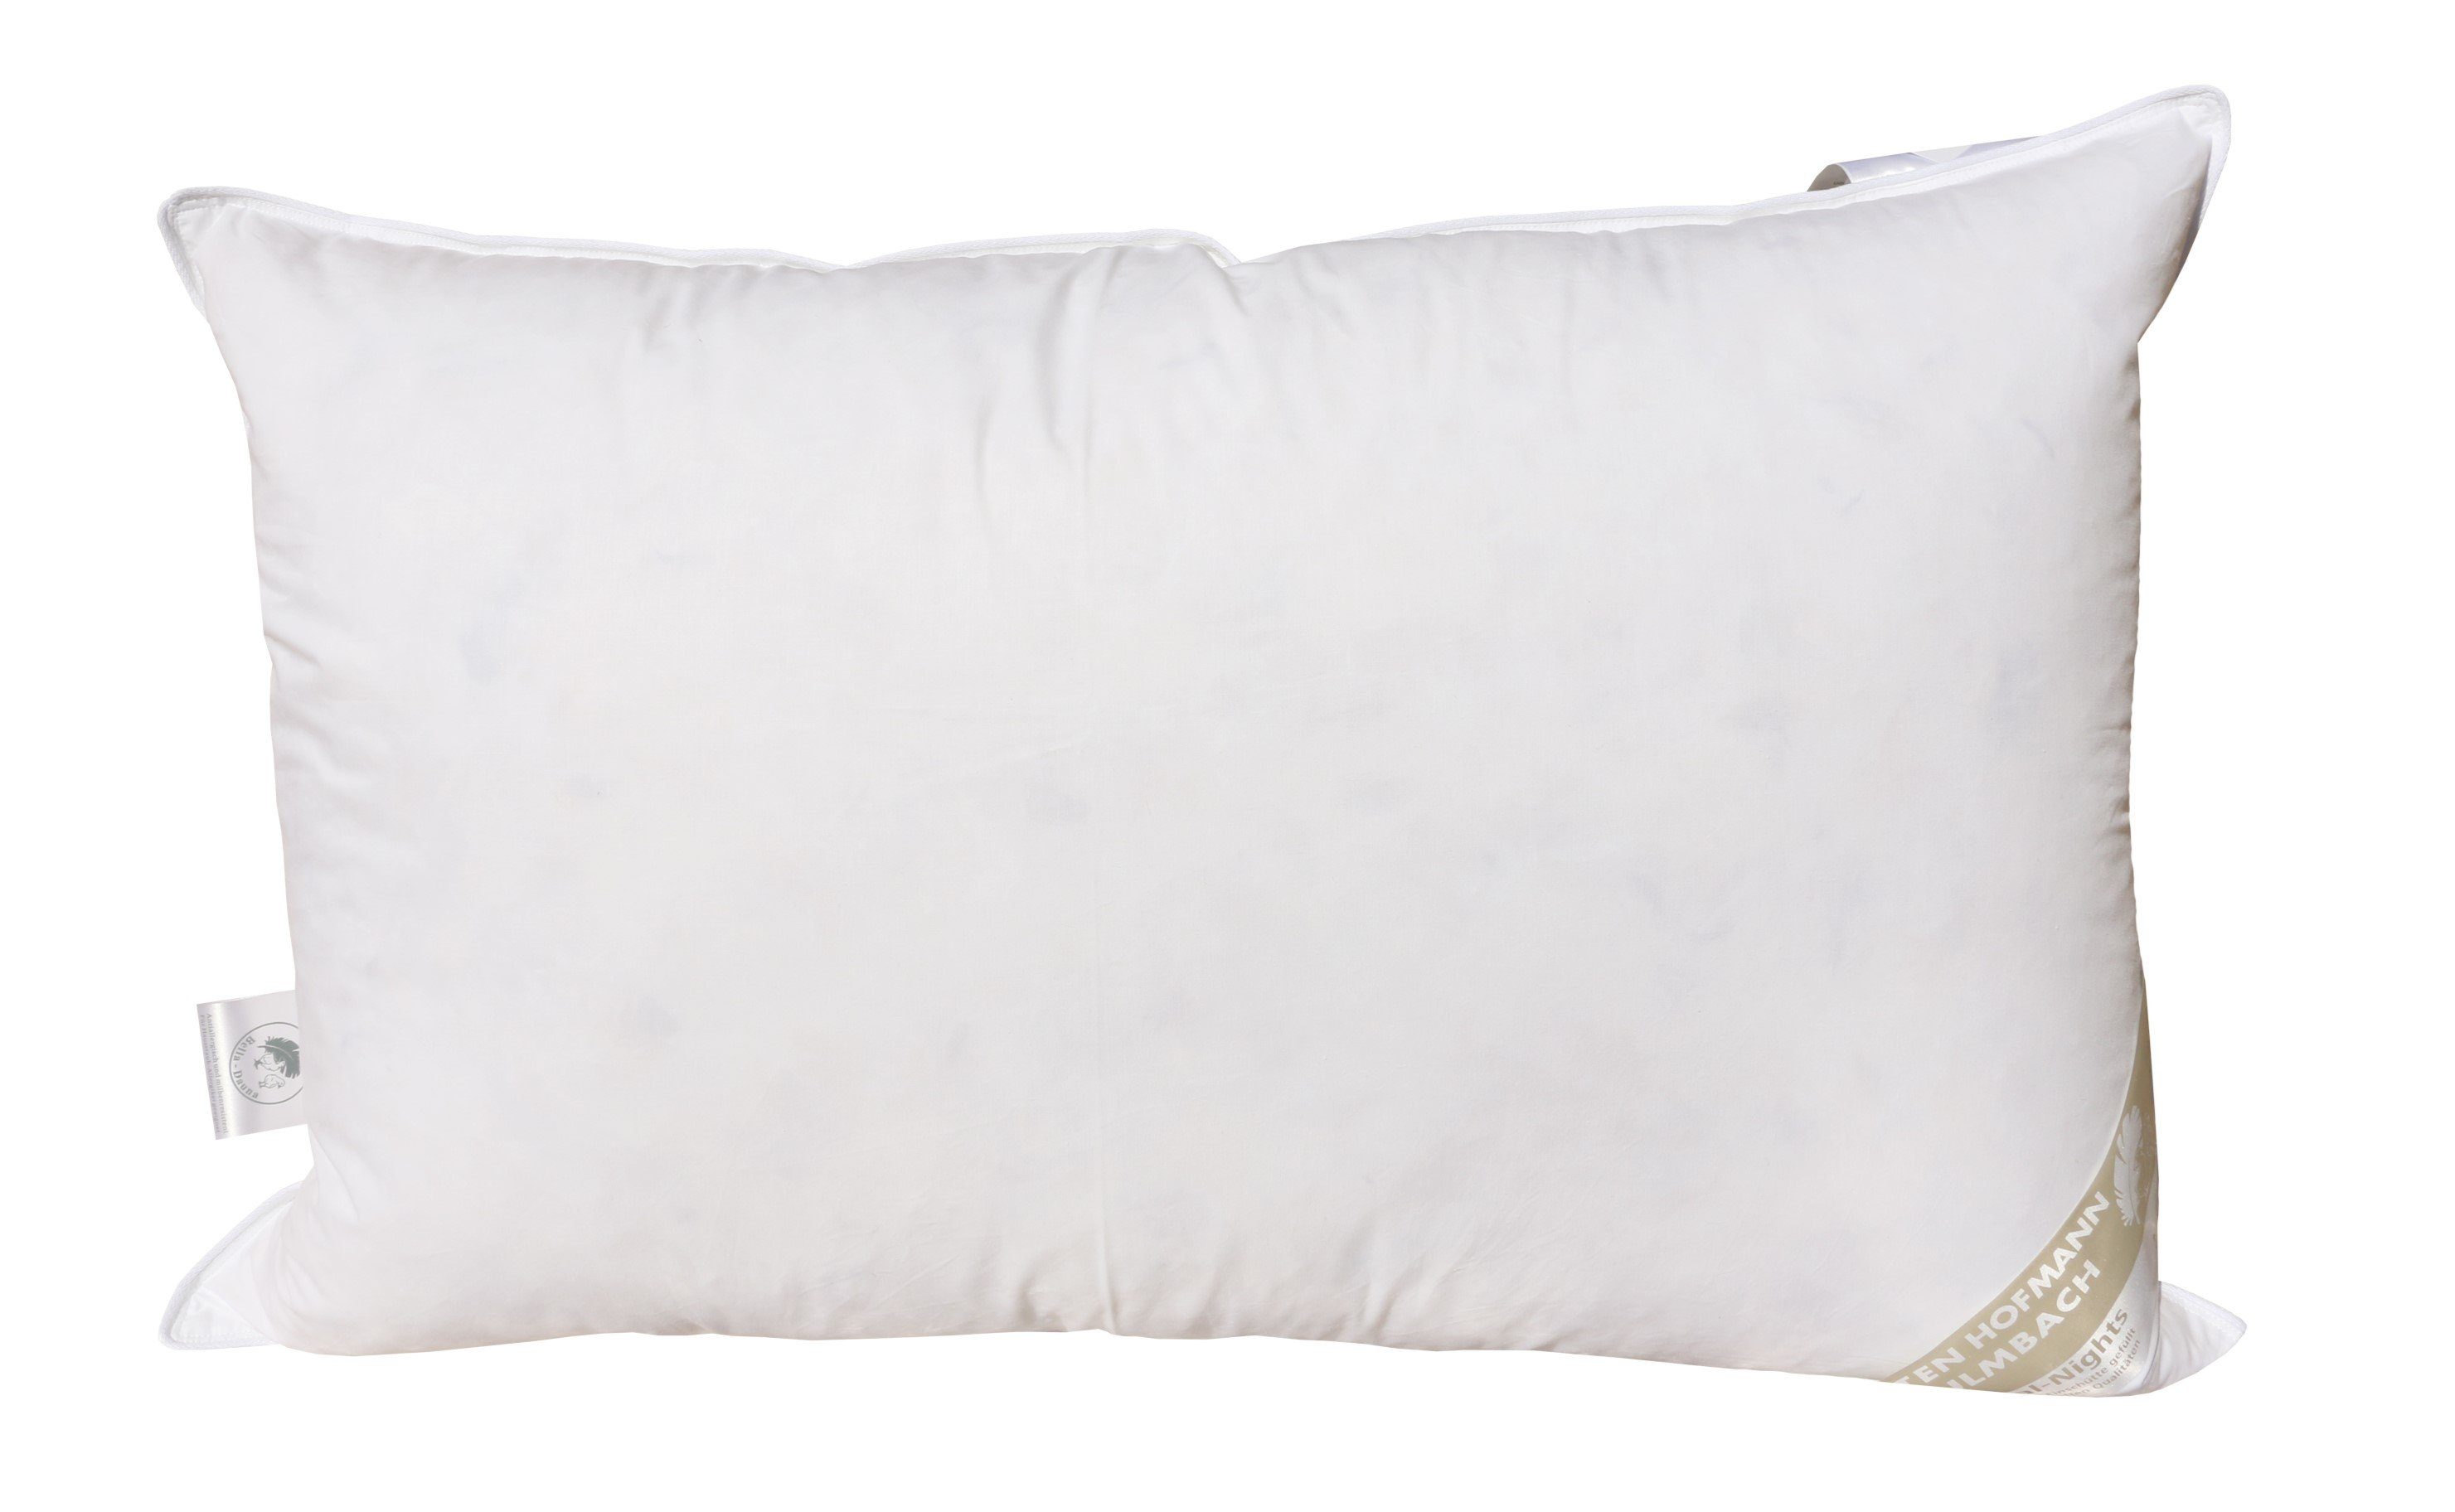 Kopfkissen Extrem Volumen Daunen-Feder-Kissen Kopfkissen 1500g, 50x75 Baumwolle, fest Betten Rückenschläfer Hofmann, sehr 100% Bezug